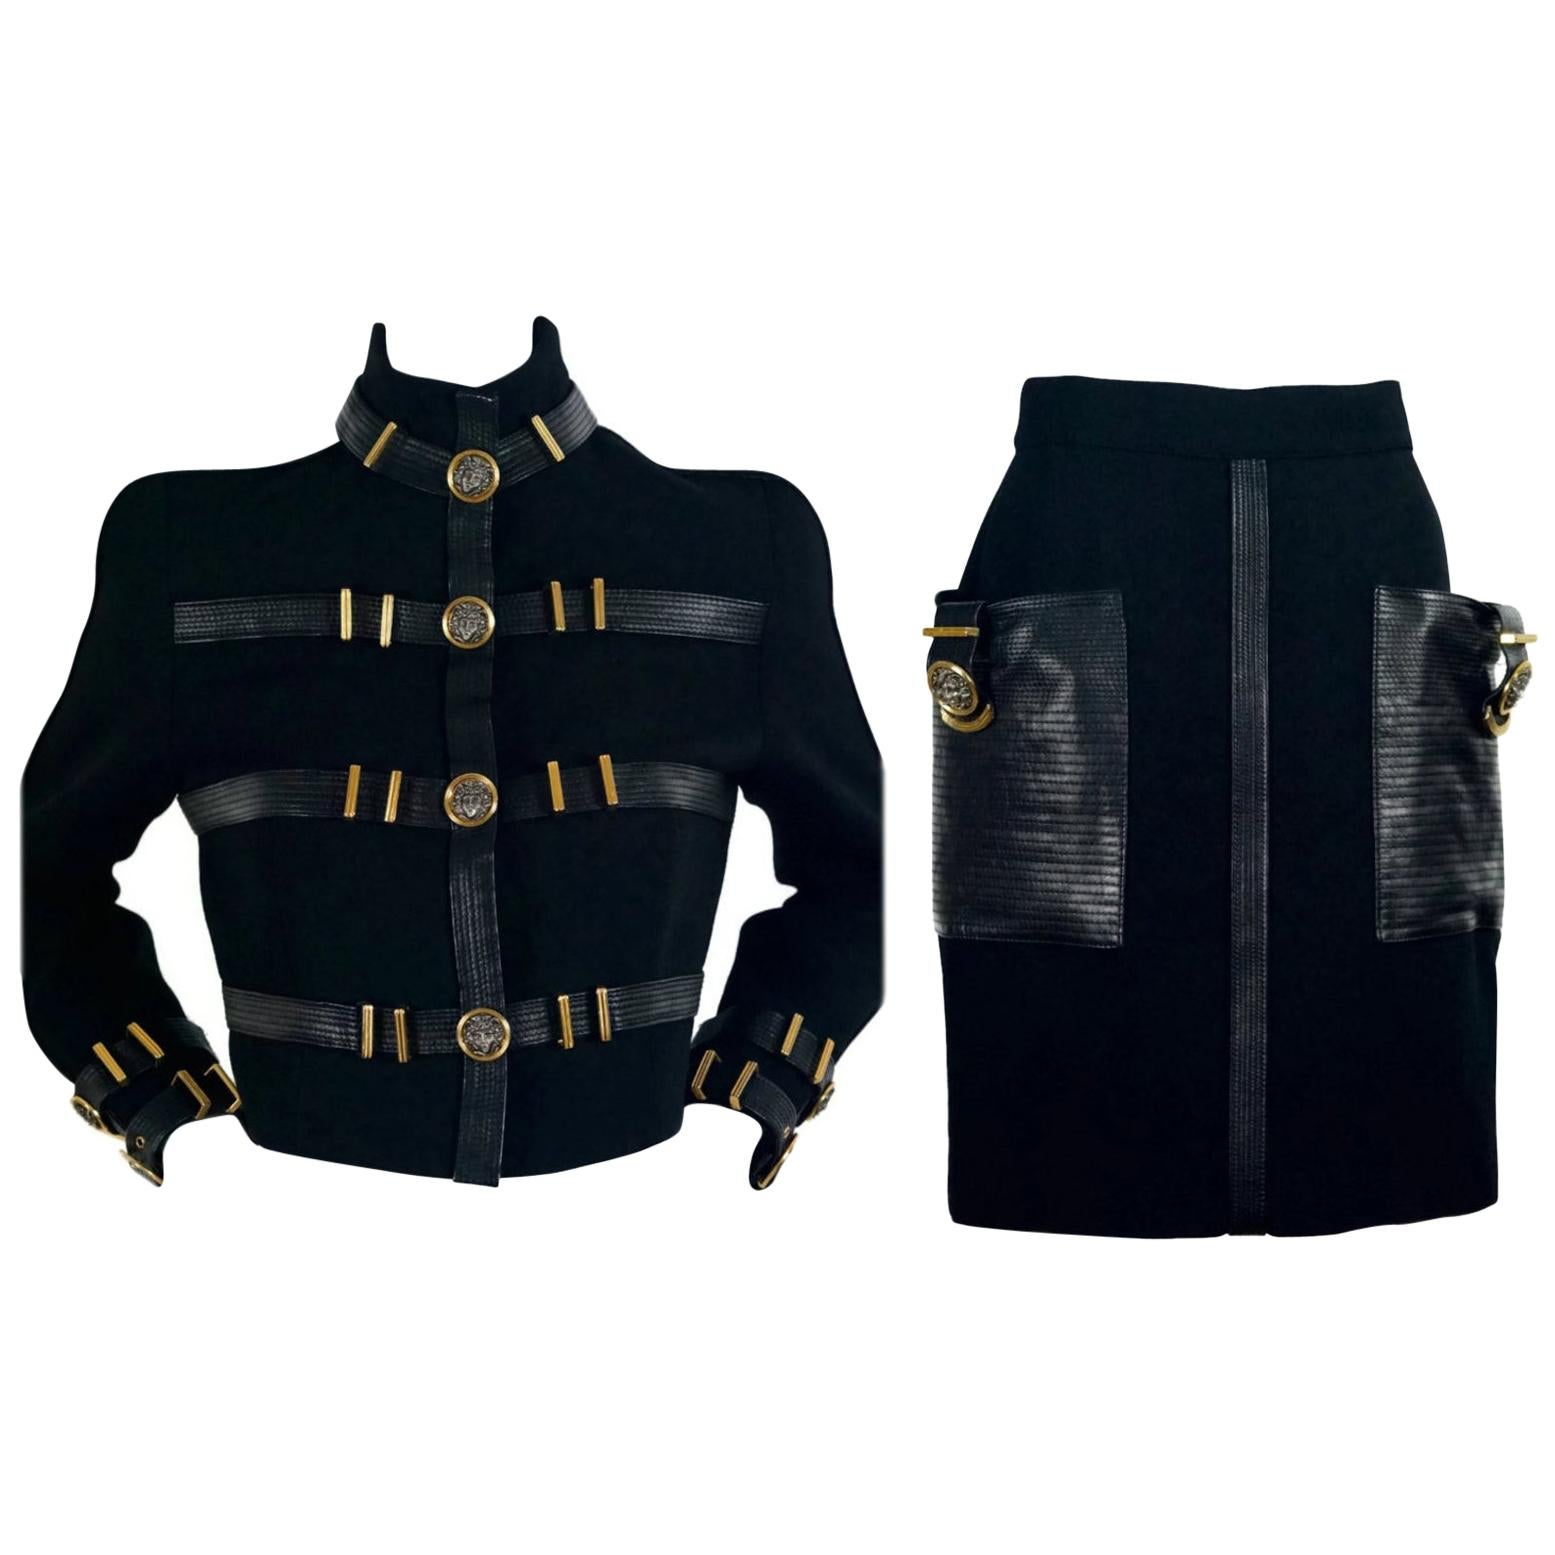 1992 GIANNI VERSACE COUTURE Iconic Leather Bondage Jacket Skirt Suit